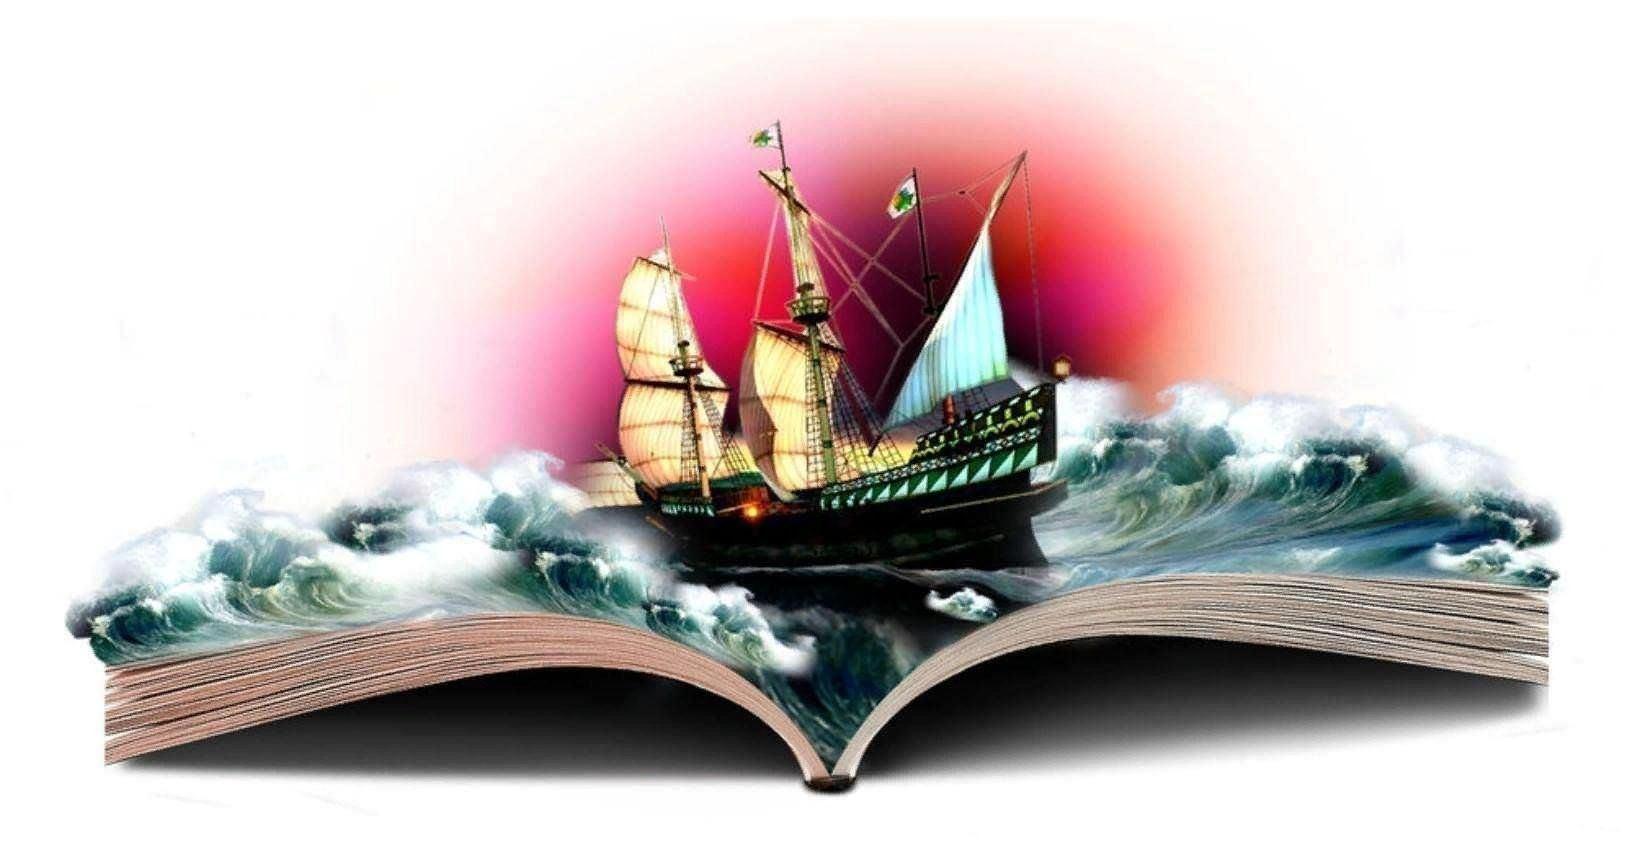 Корабль мечта текст. Книга про корабли. Книги корабли мысли странствующие по волнам времени. Книги корабли мысли. Путешествие по книгам.